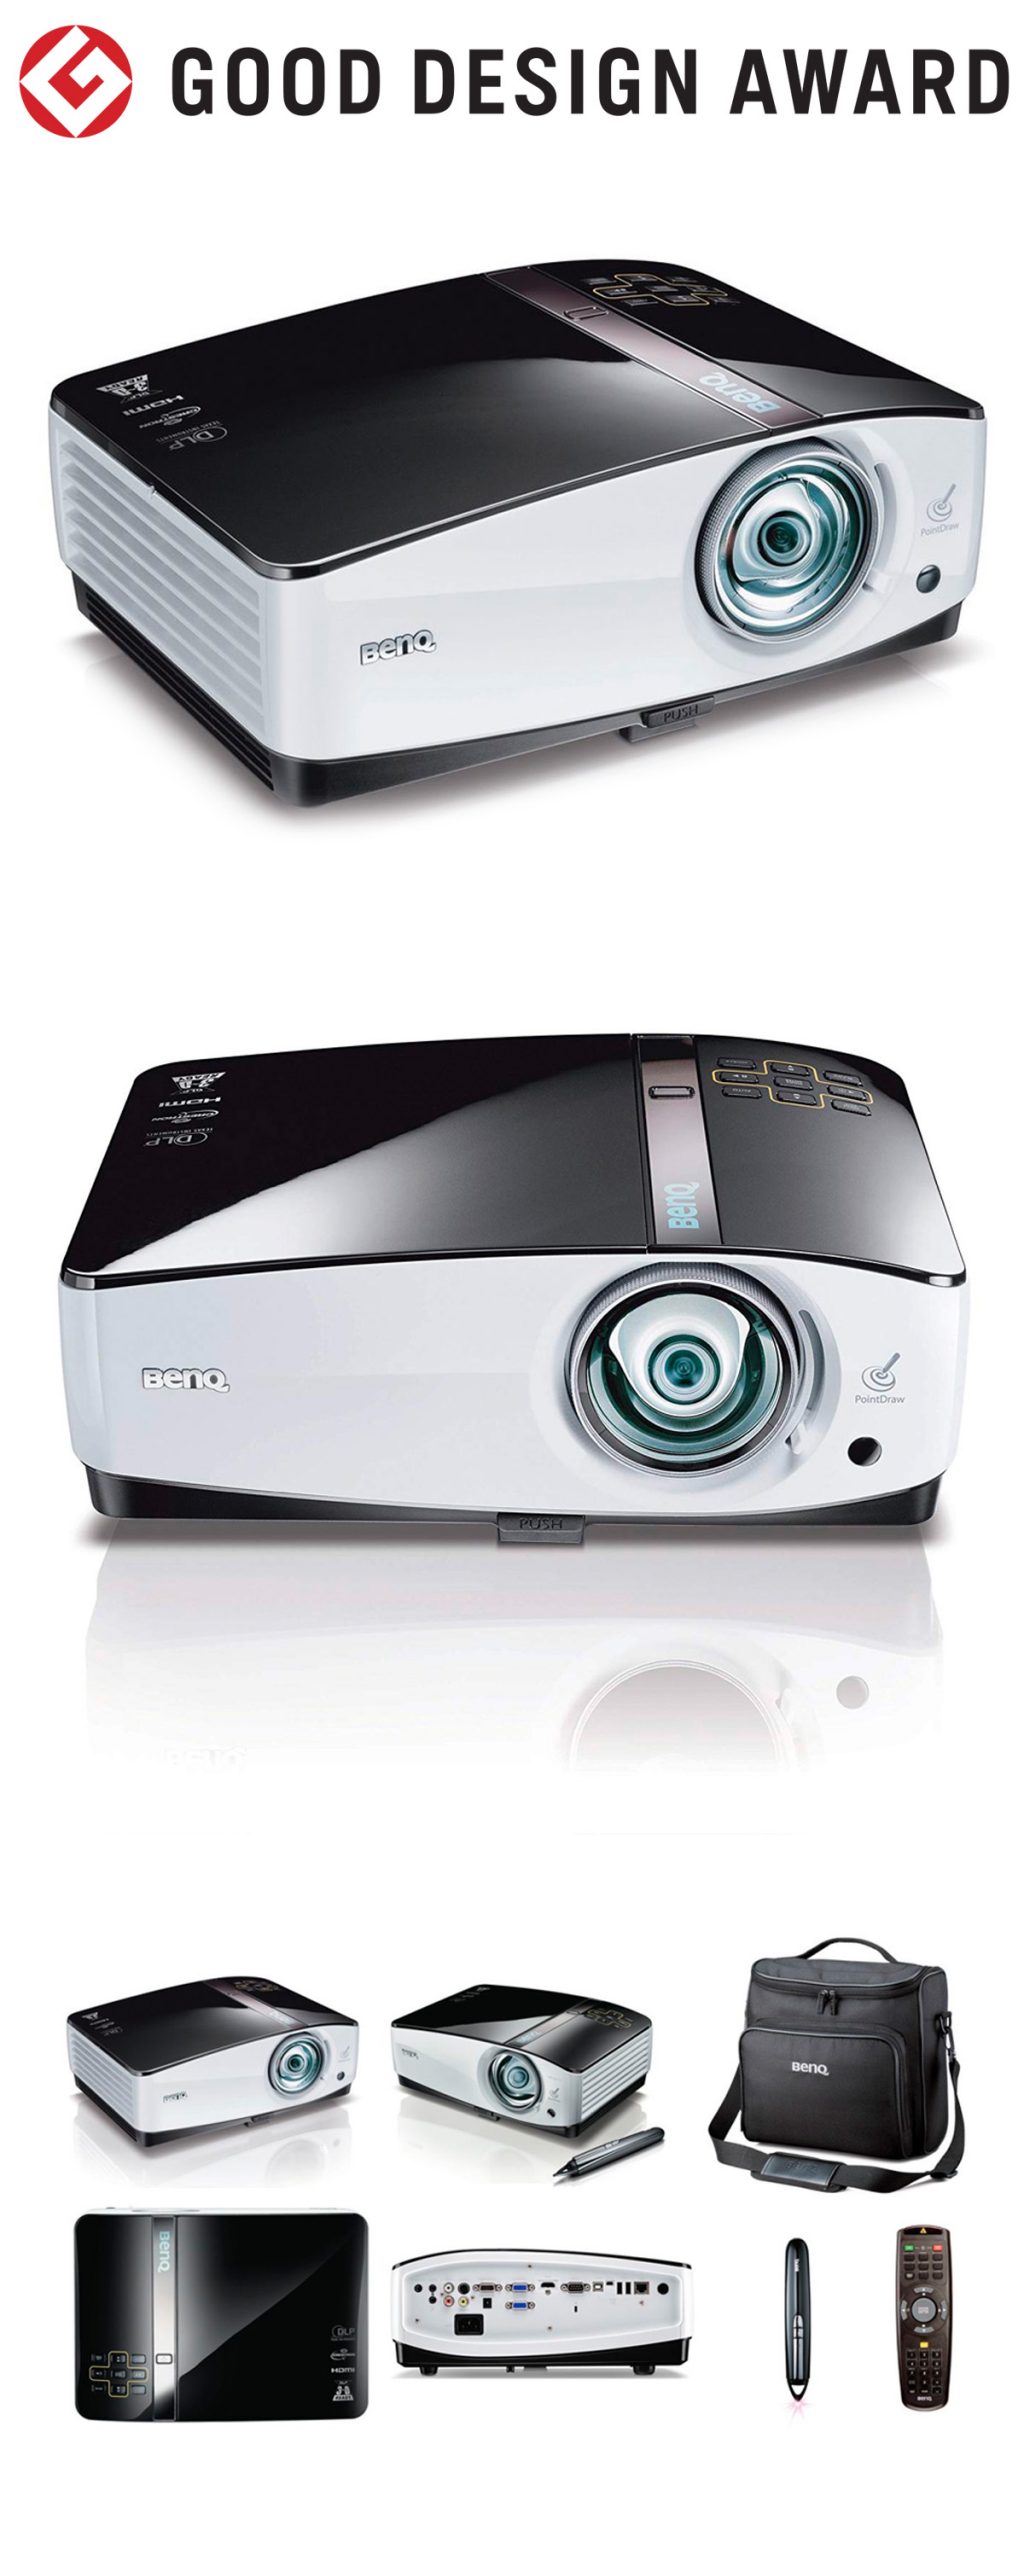 【日本】明基BenQ短焦投影机MP780ST获颁2010年度G-Mark设计大奖（GOOD DESIGN AWARD 2010）